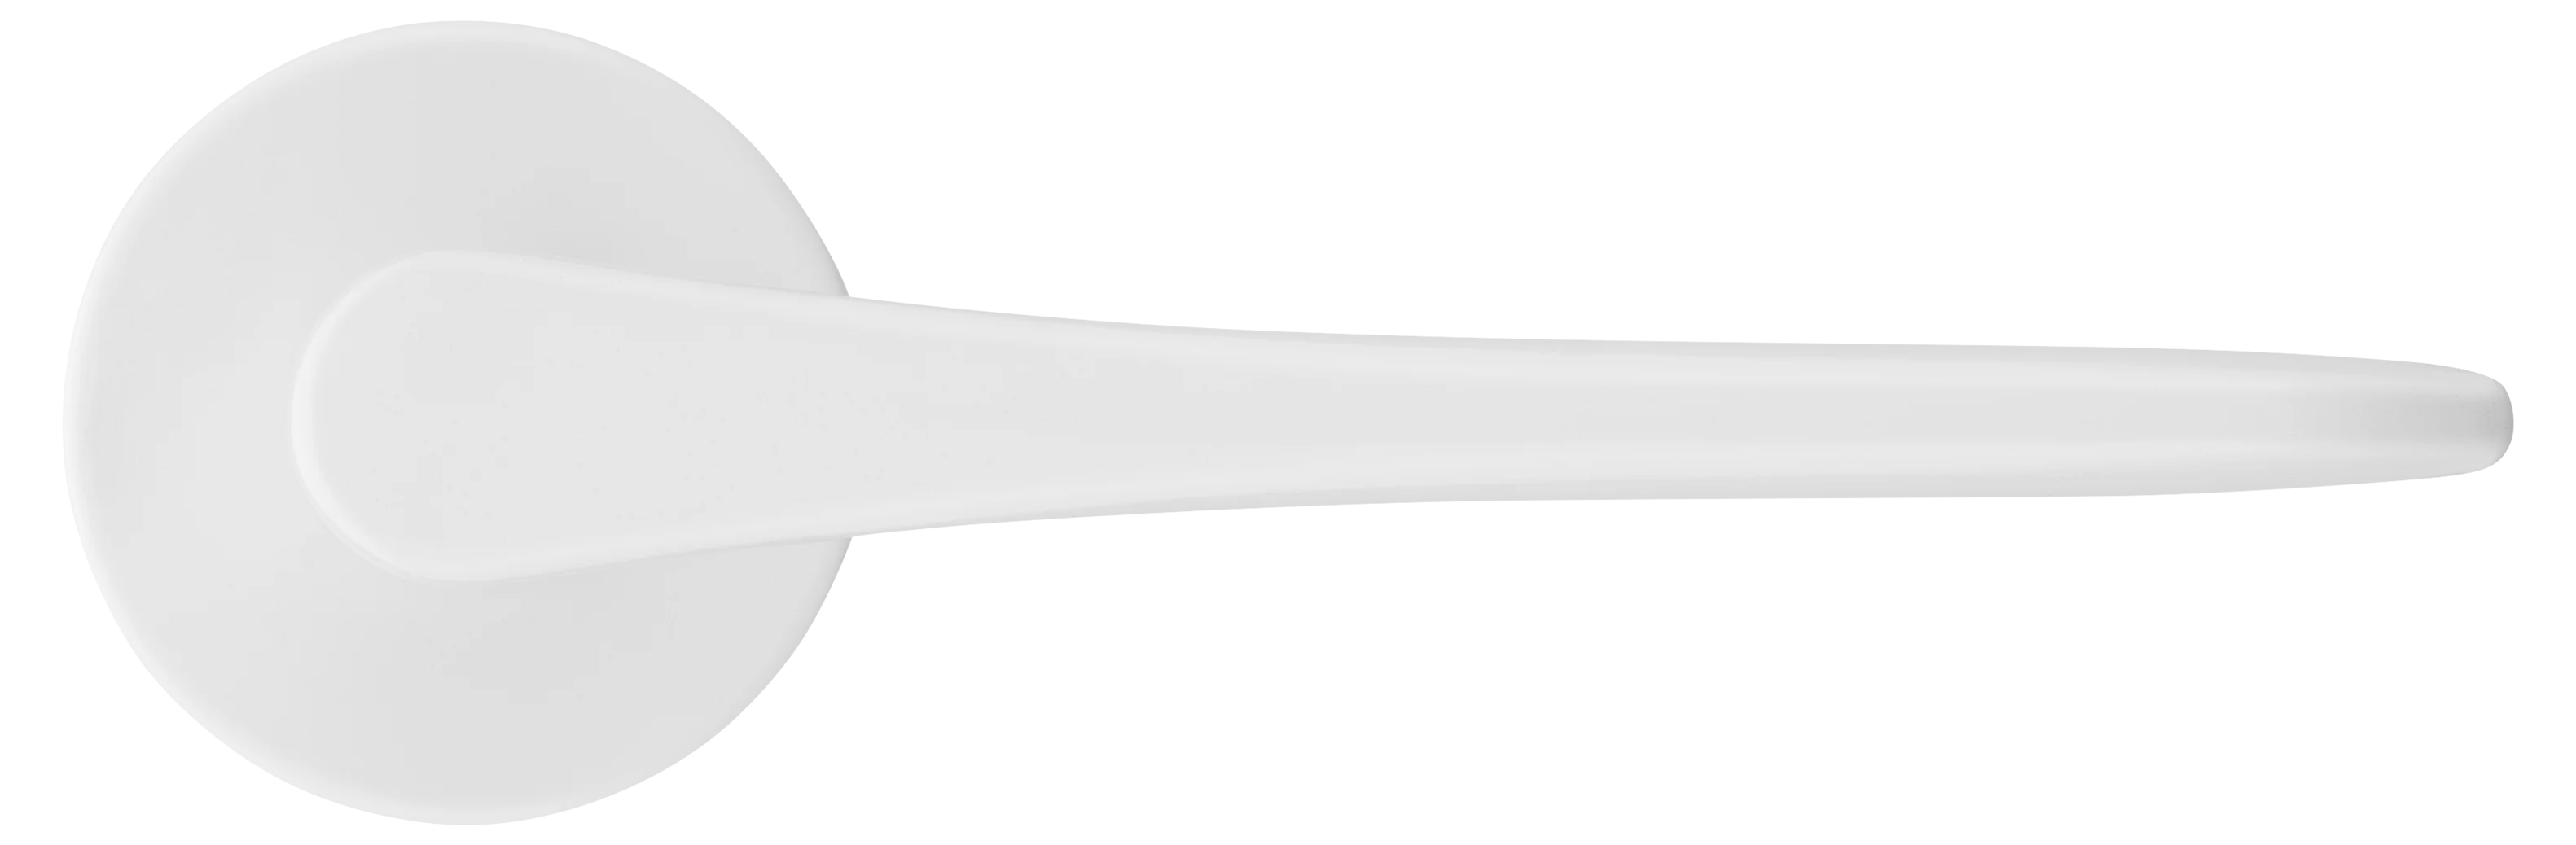 AULA R5 BIA, ручка дверная на розетке 7мм, цвет -  белый фото купить в СПб